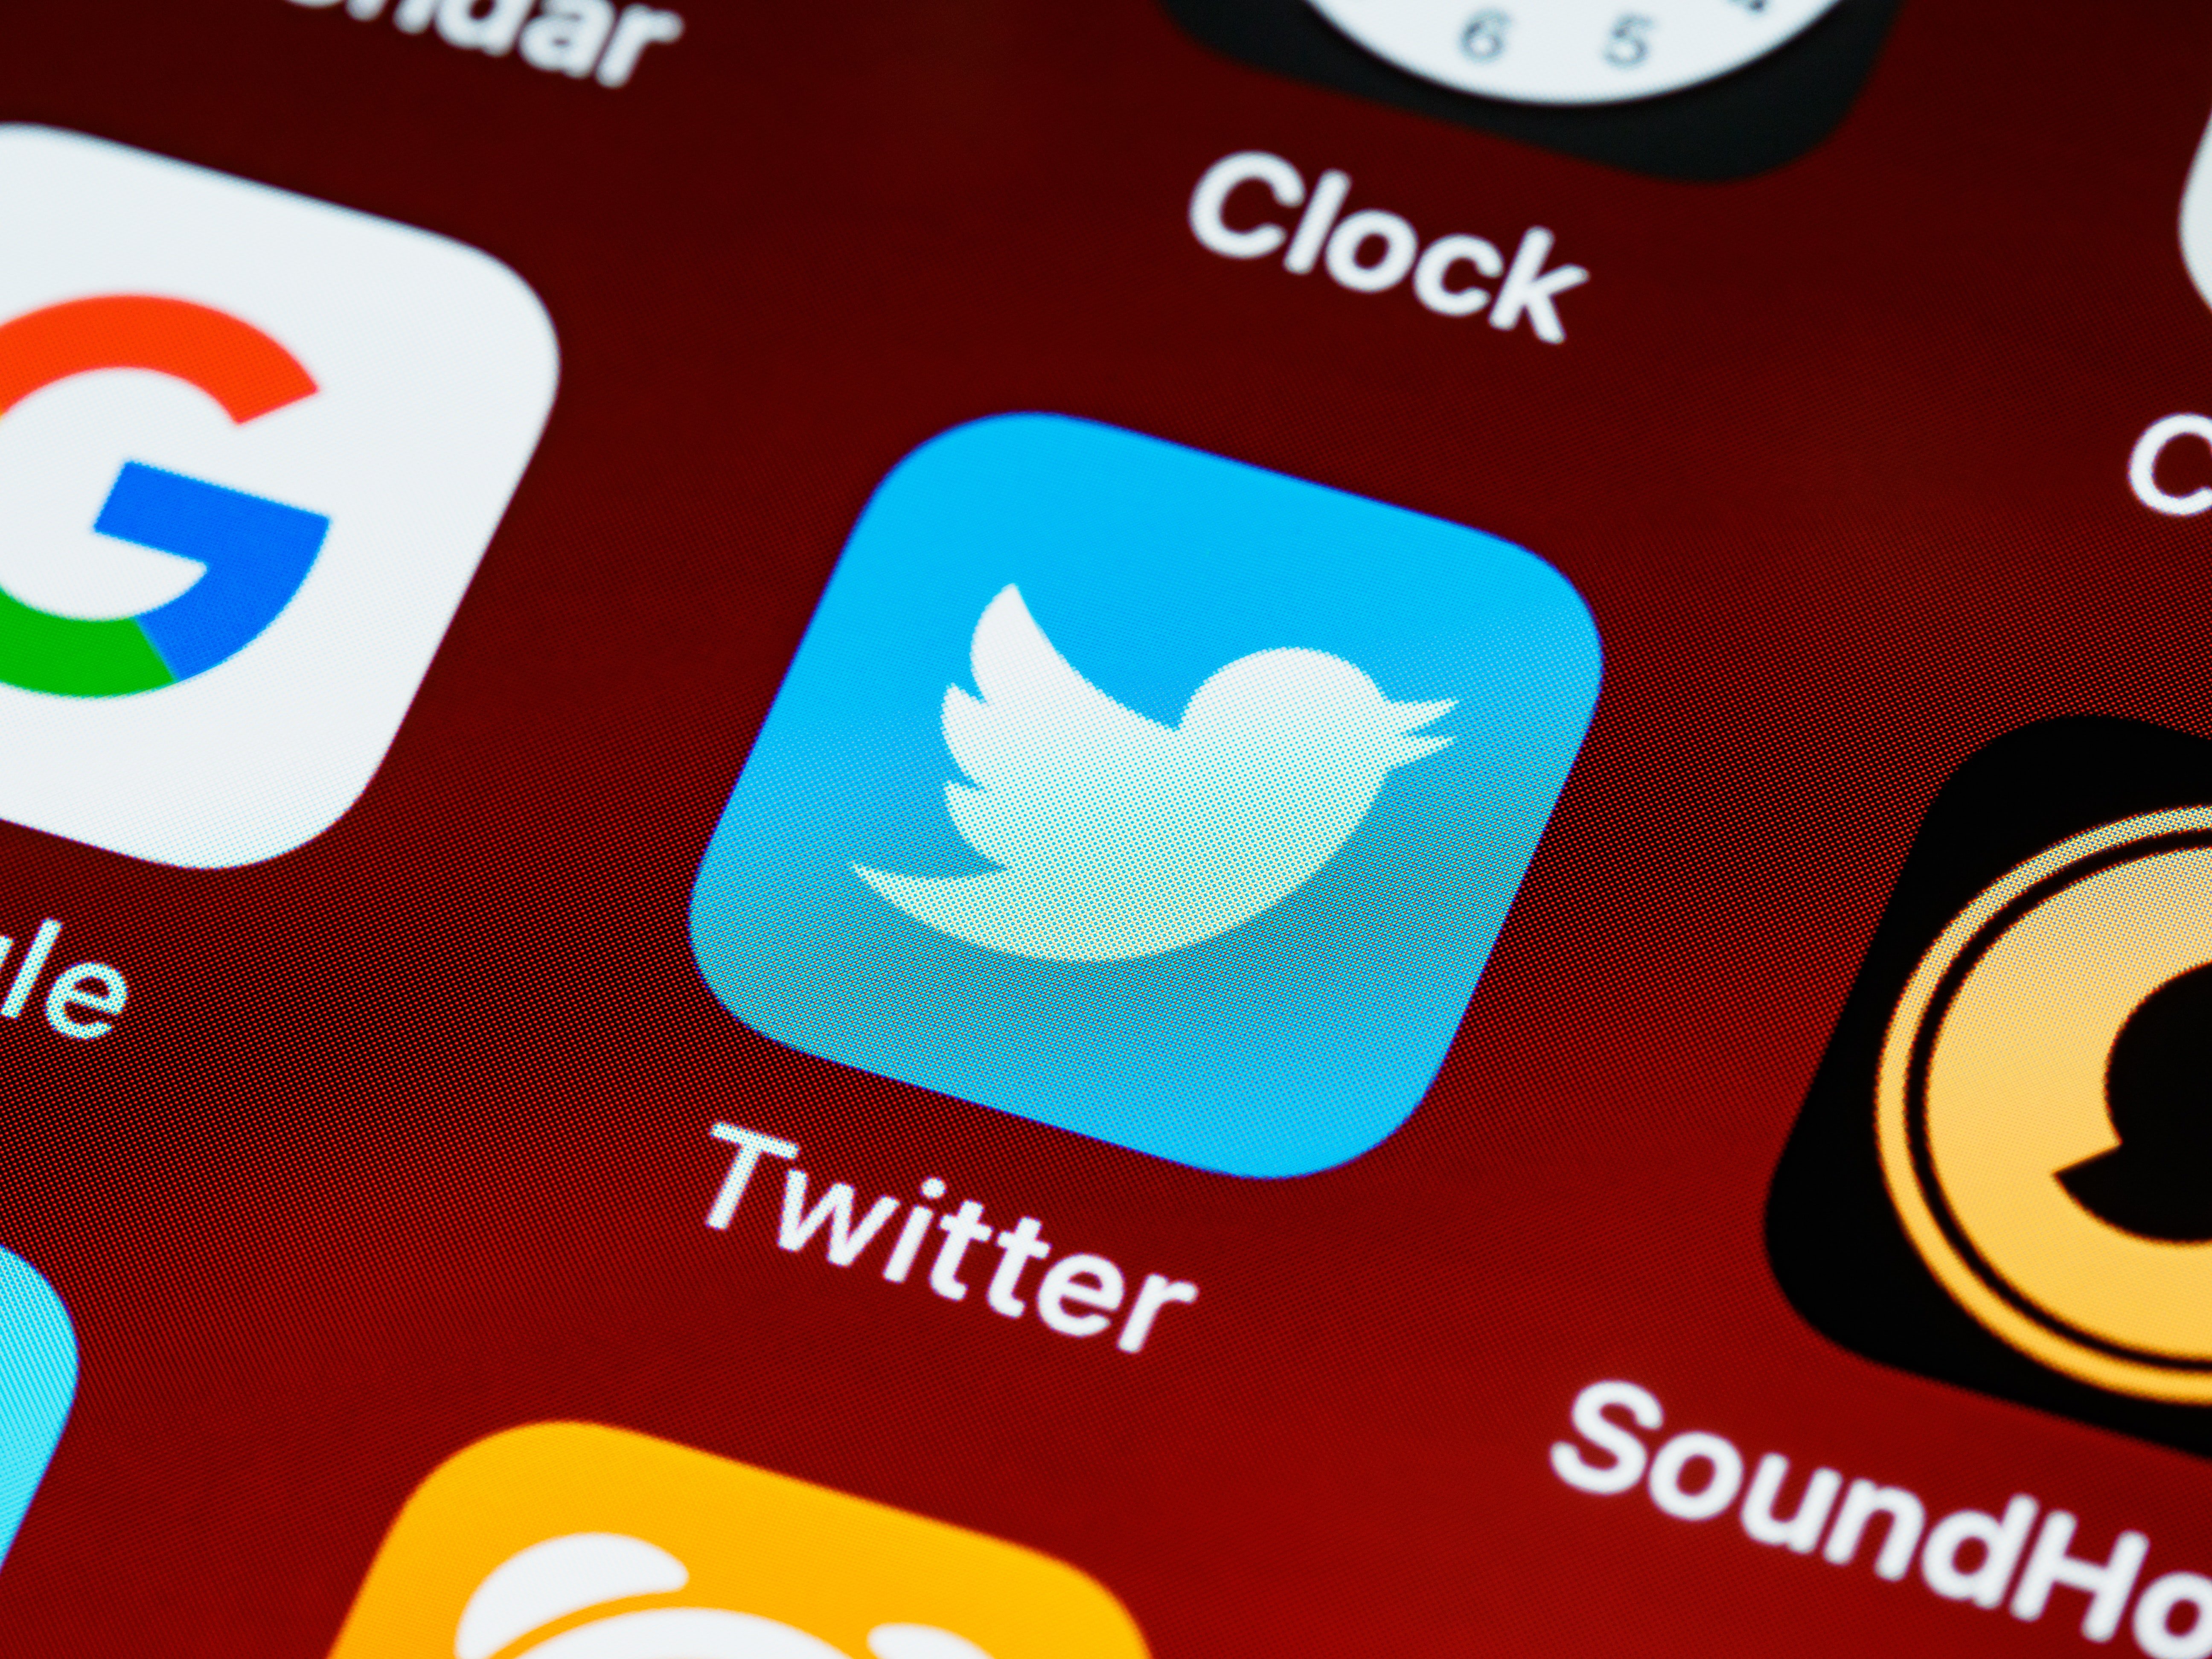 Twitter etiqueta Vox de "extrema derecha" y potencia el discurso de derechas